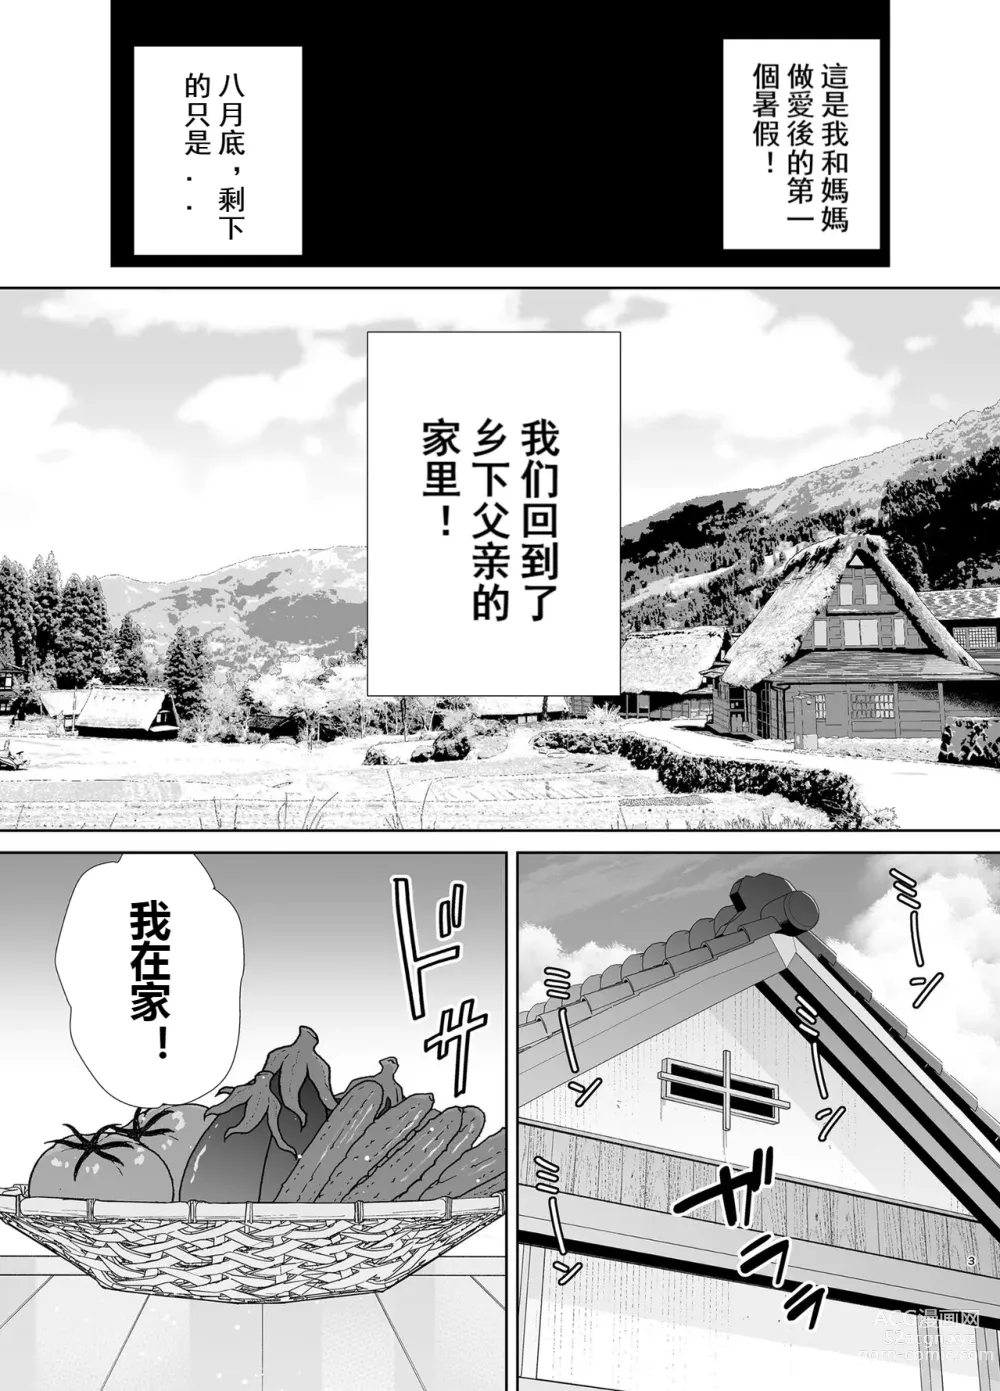 Page 2 of doujinshi 母印堂5